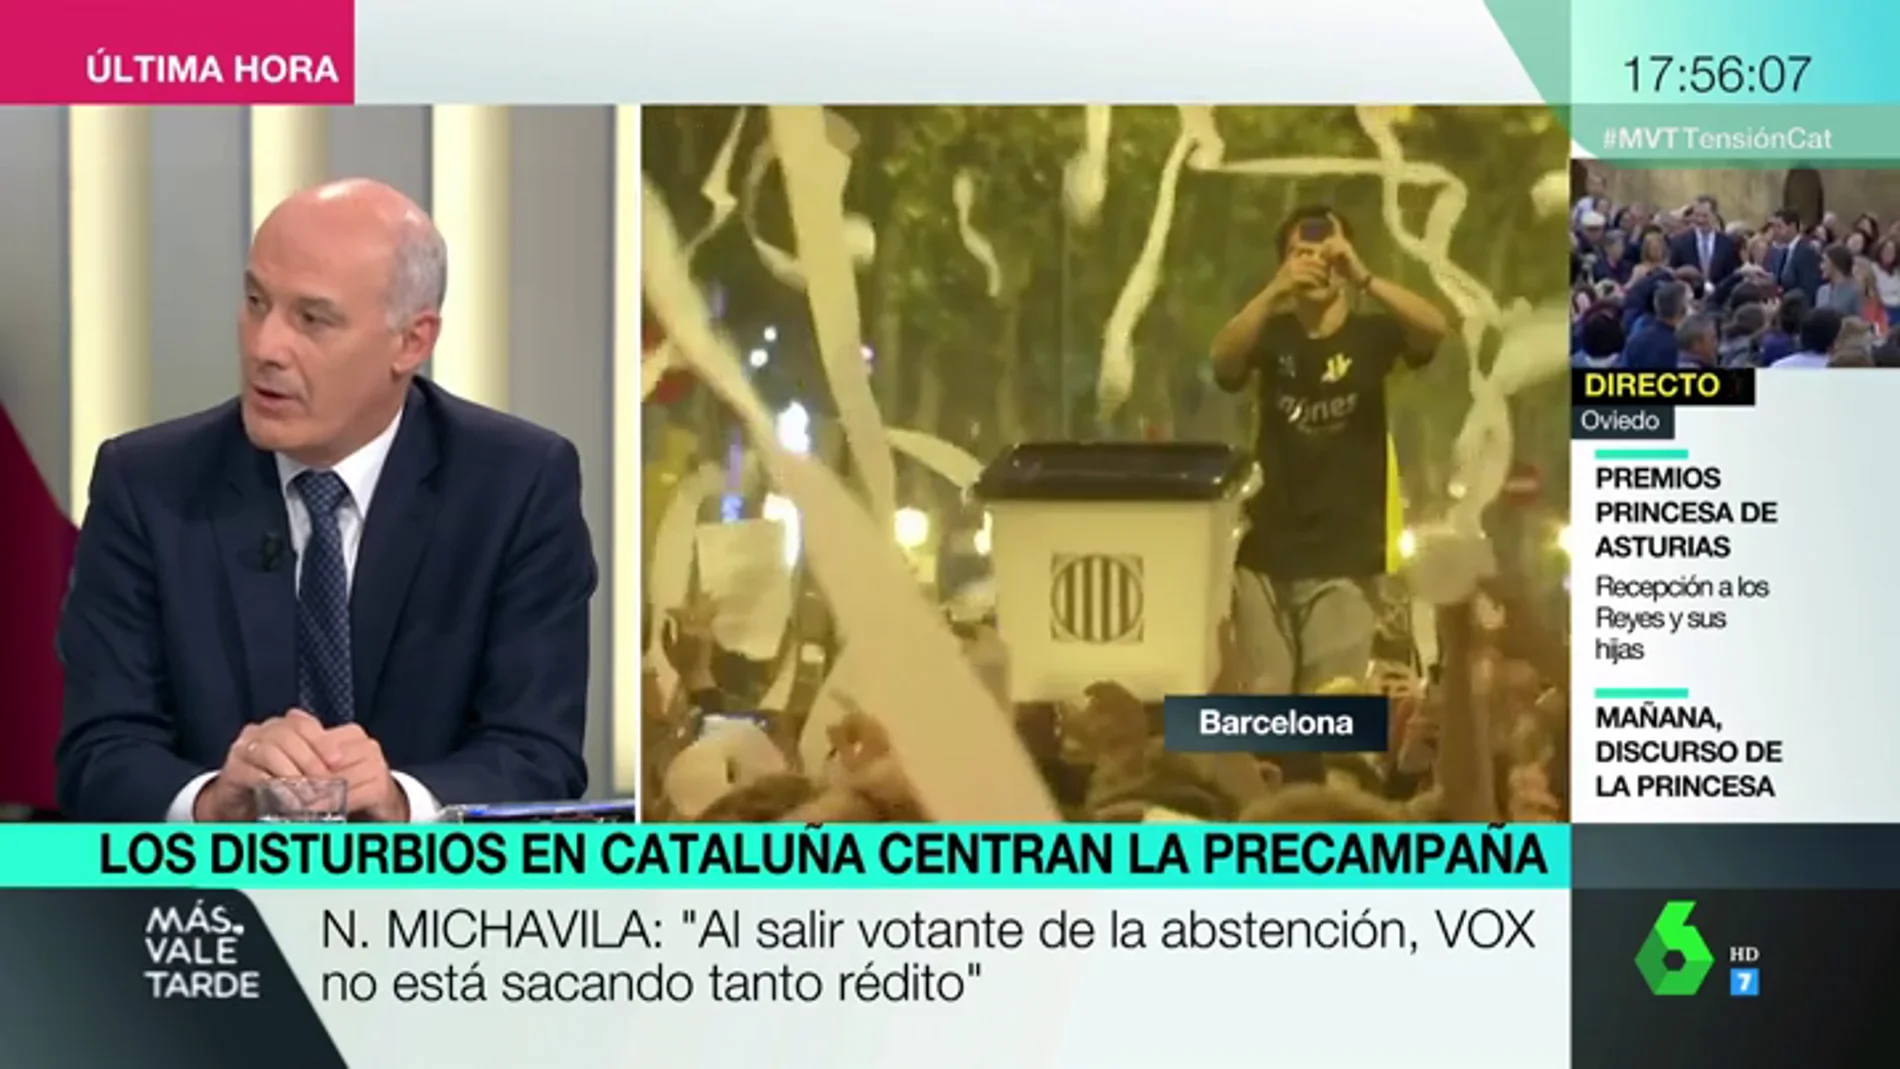 Así podrían afectar las protestas de Cataluña a los resultados electorales el 10N